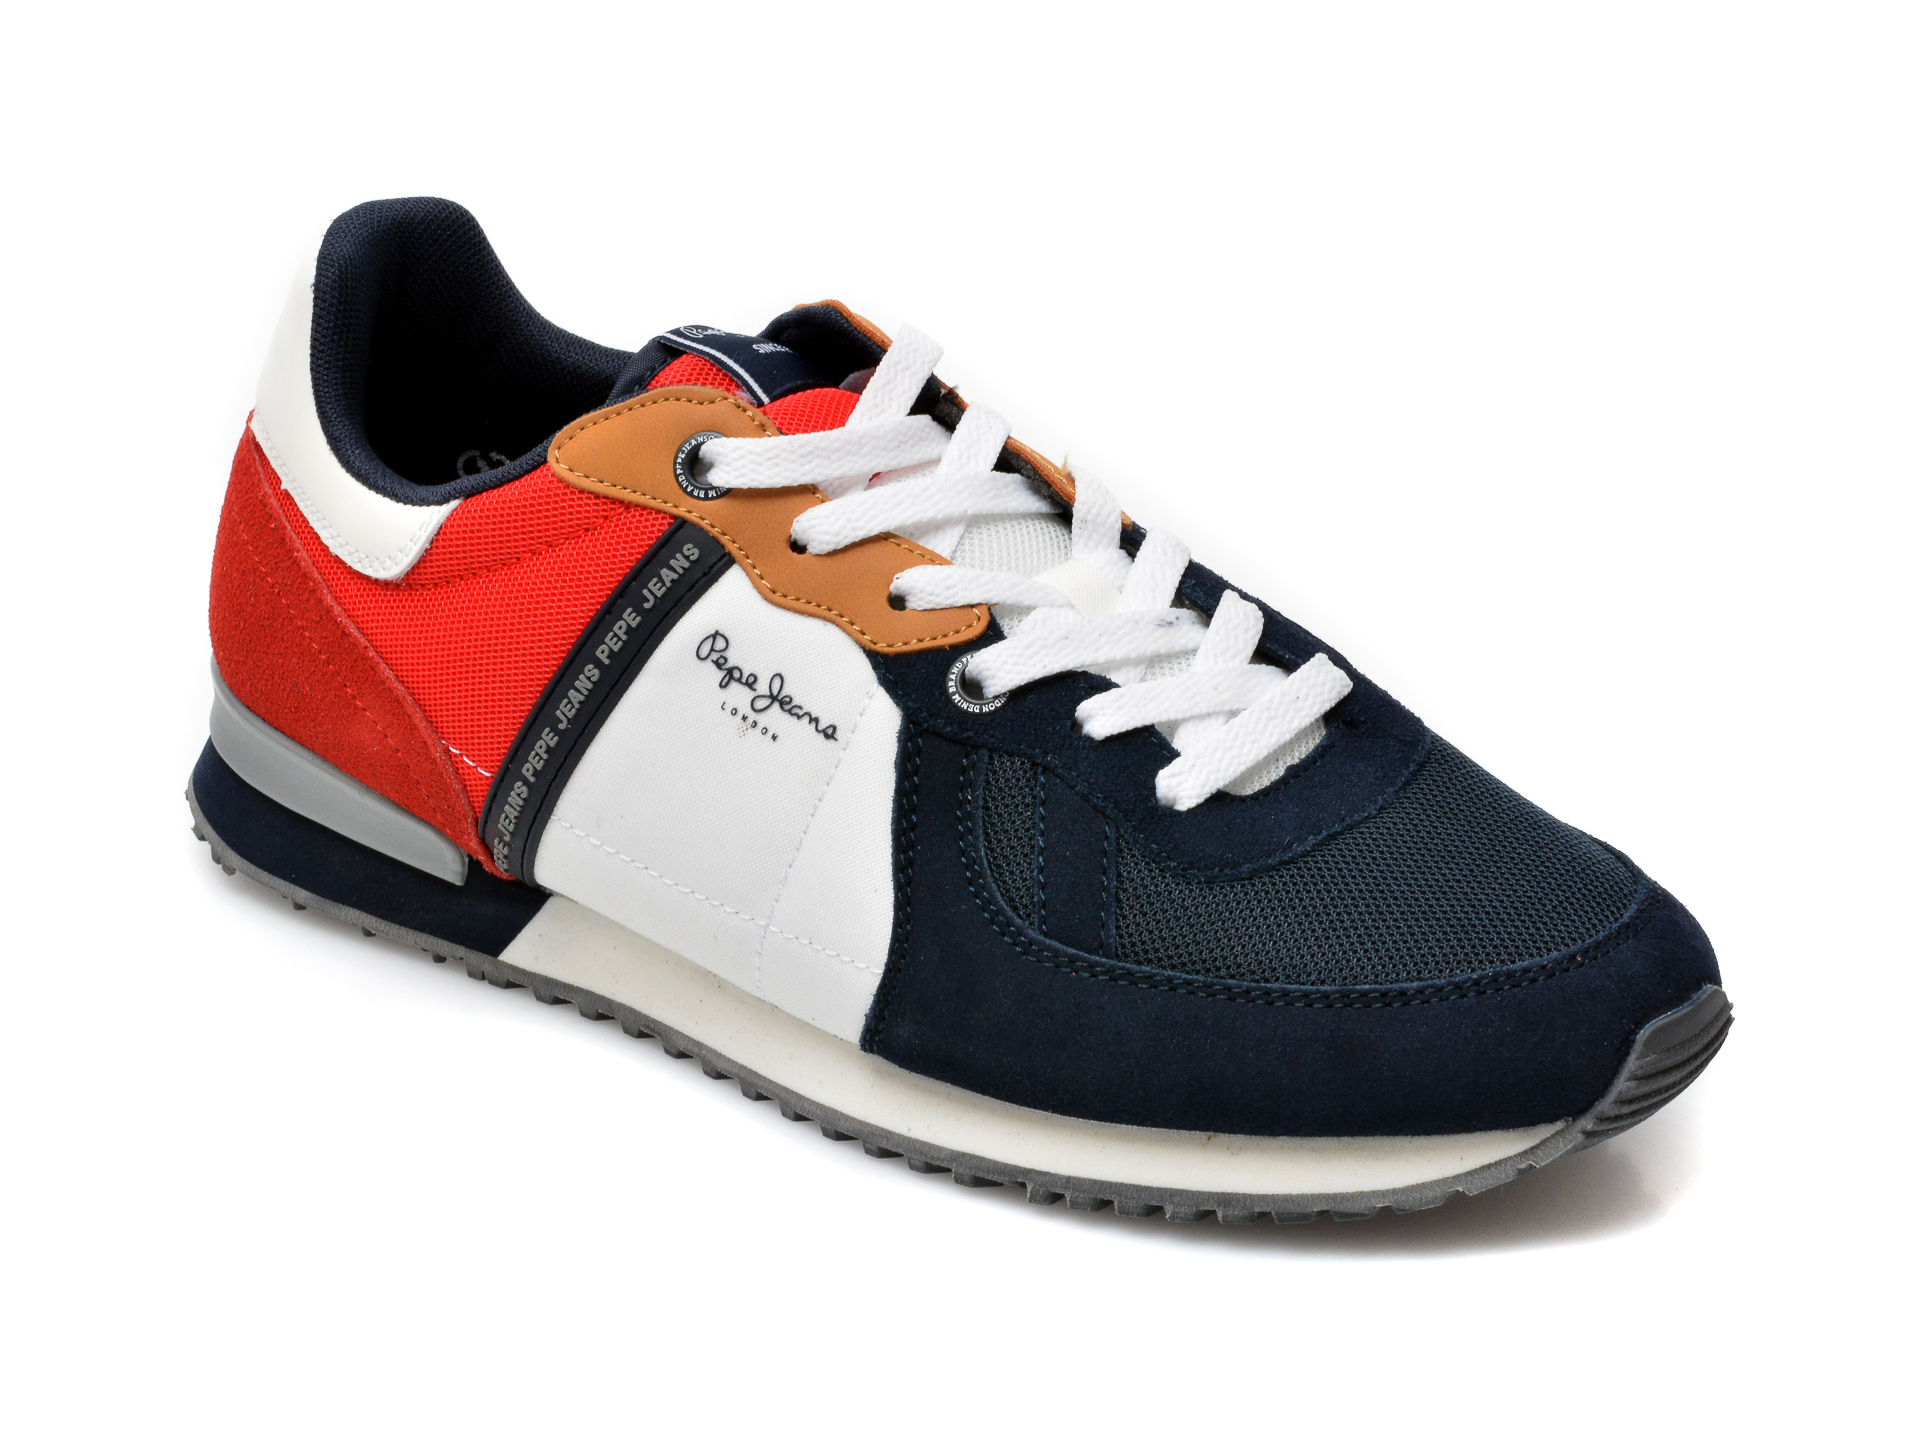 Pantofi sport PEPE JEANS bleumarin, 3072599, din material textil si piele naturala